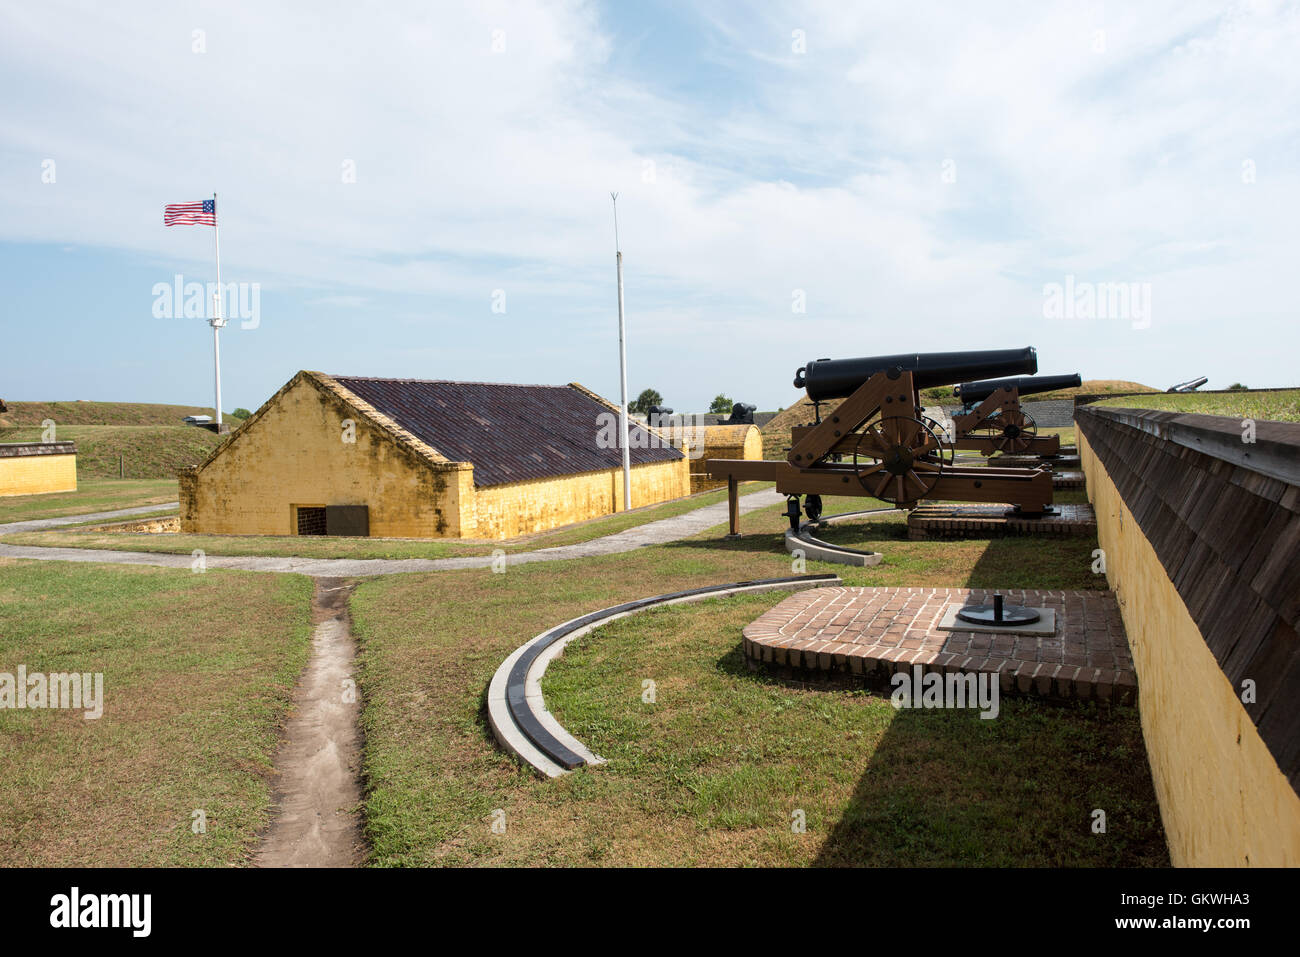 SULLIVAN'S ISLAND, South Carolina - Sullivan's Island, South Carolina - Fort Moultrie ist Teil der Fort Sumter National Monument am Eingang zum Hafen von Charleston in South Carolina. Das Fort hat eine entscheidende Rolle bei der Verteidigung der Hafen aus der Zeit des revolutionären Krieges durch den Zweiten Weltkrieg gespielt Während dieser Zeit hat es mehrere Upgrades unterzogen, von der ursprünglichen Palmetto Wände auf die neuere stark befestigte irdenen Bunker anmelden. Stockfoto